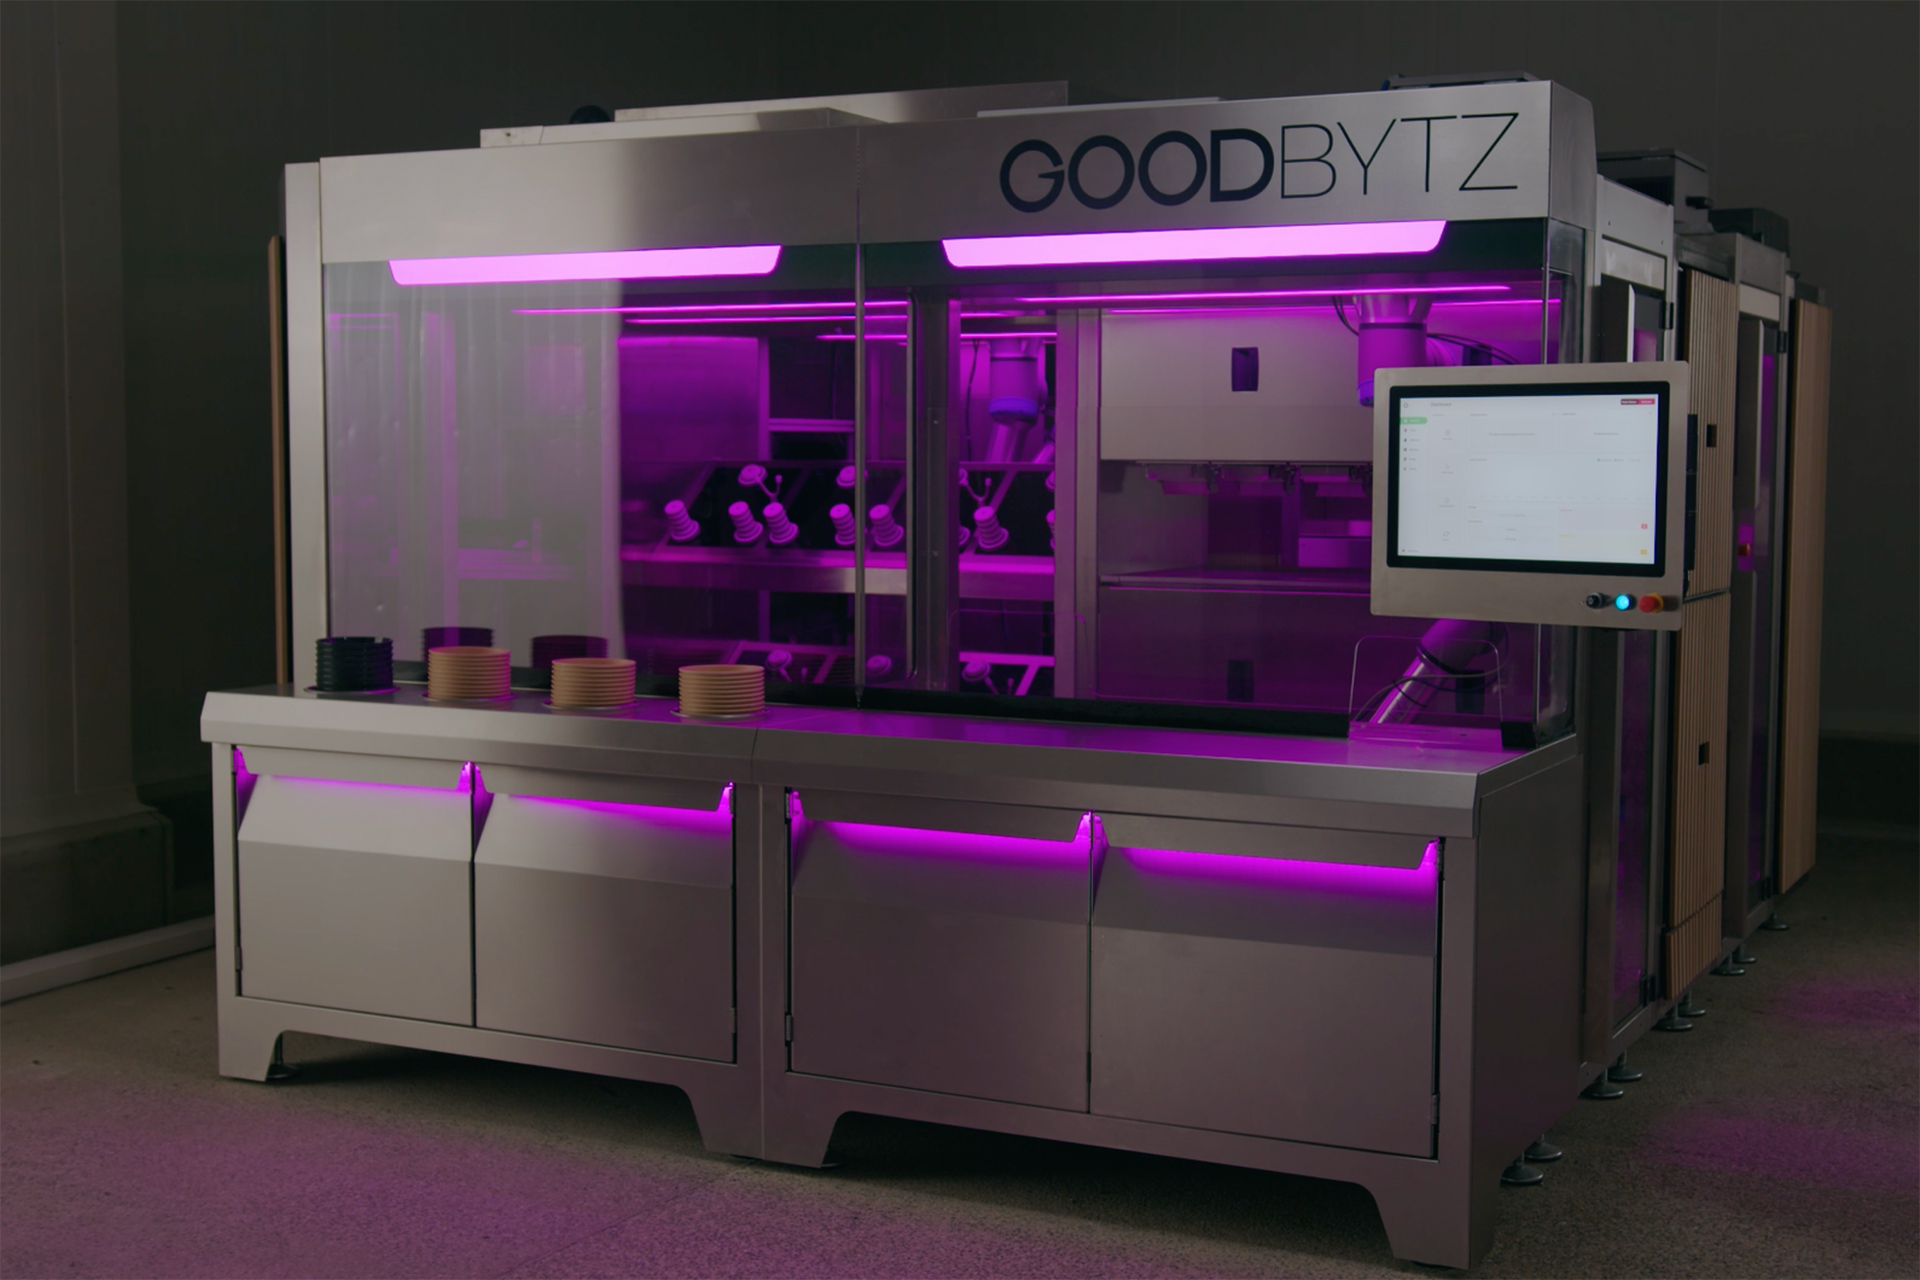 Der Robotic-Kitchen-Assistant von GoodBytz. © GoodBytz